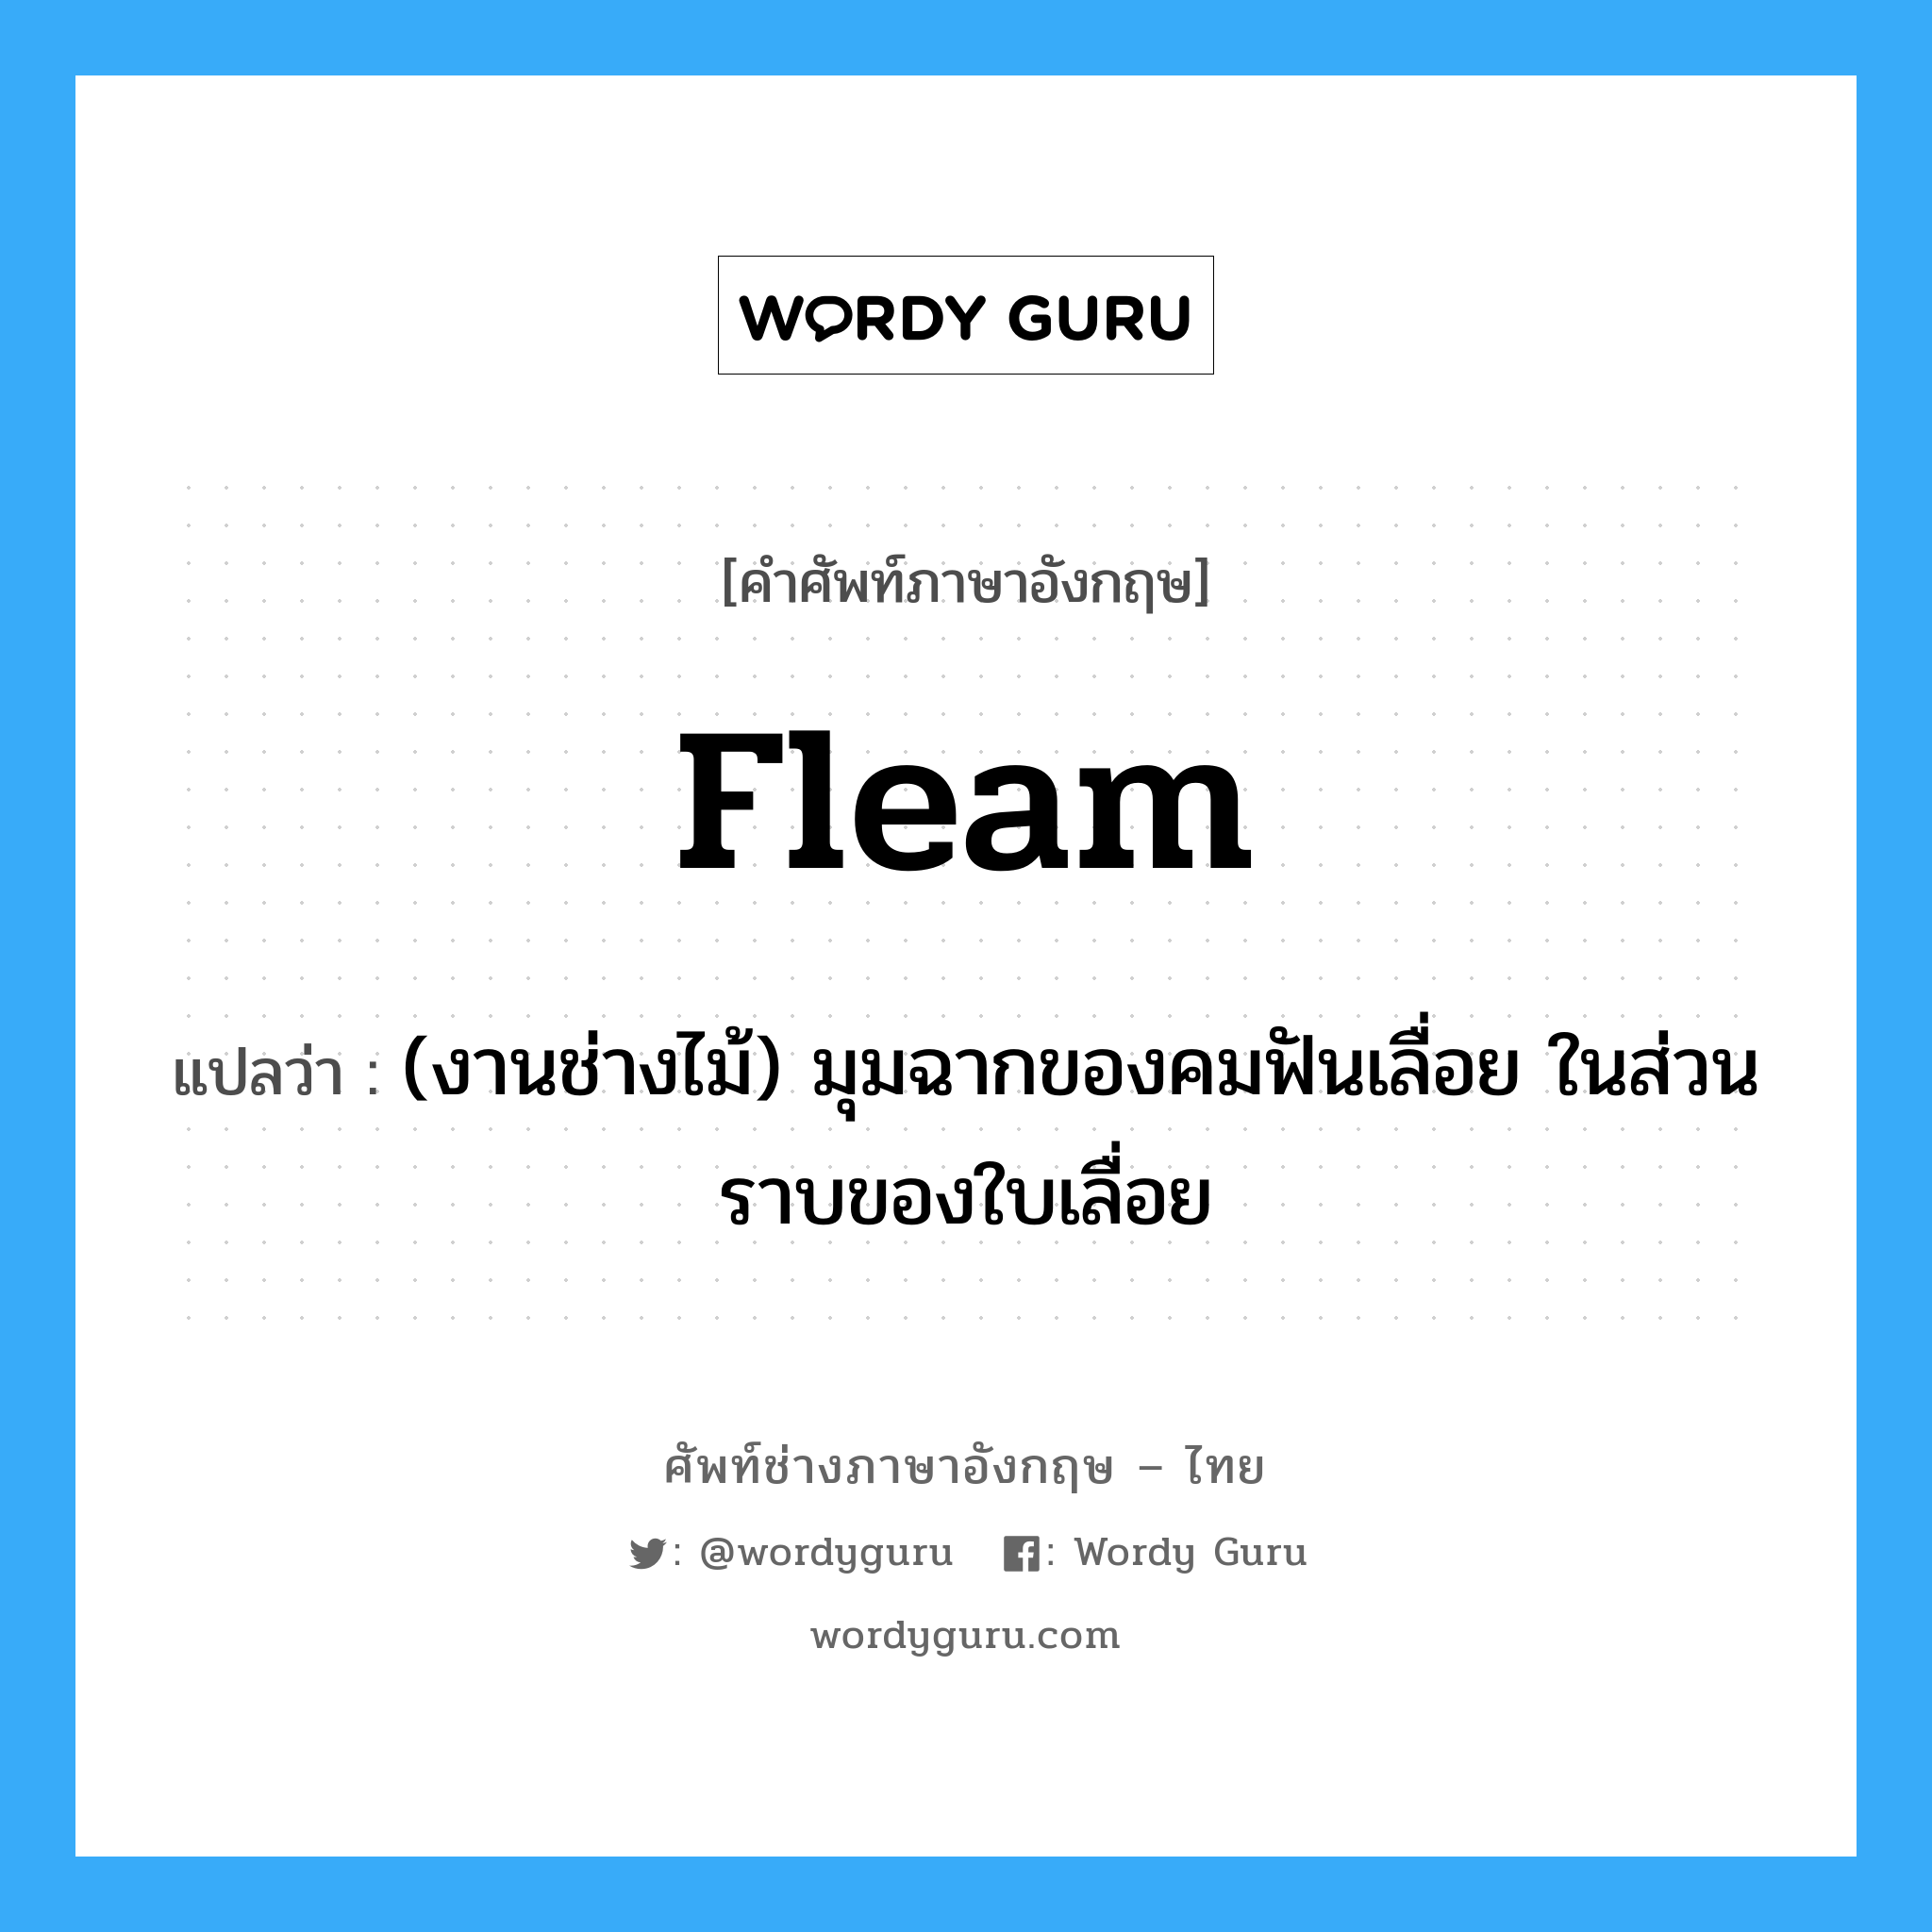 fleam แปลว่า?, คำศัพท์ช่างภาษาอังกฤษ - ไทย fleam คำศัพท์ภาษาอังกฤษ fleam แปลว่า (งานช่างไม้) มุมฉากของคมฟันเลื่อย ในส่วนราบของใบเลื่อย